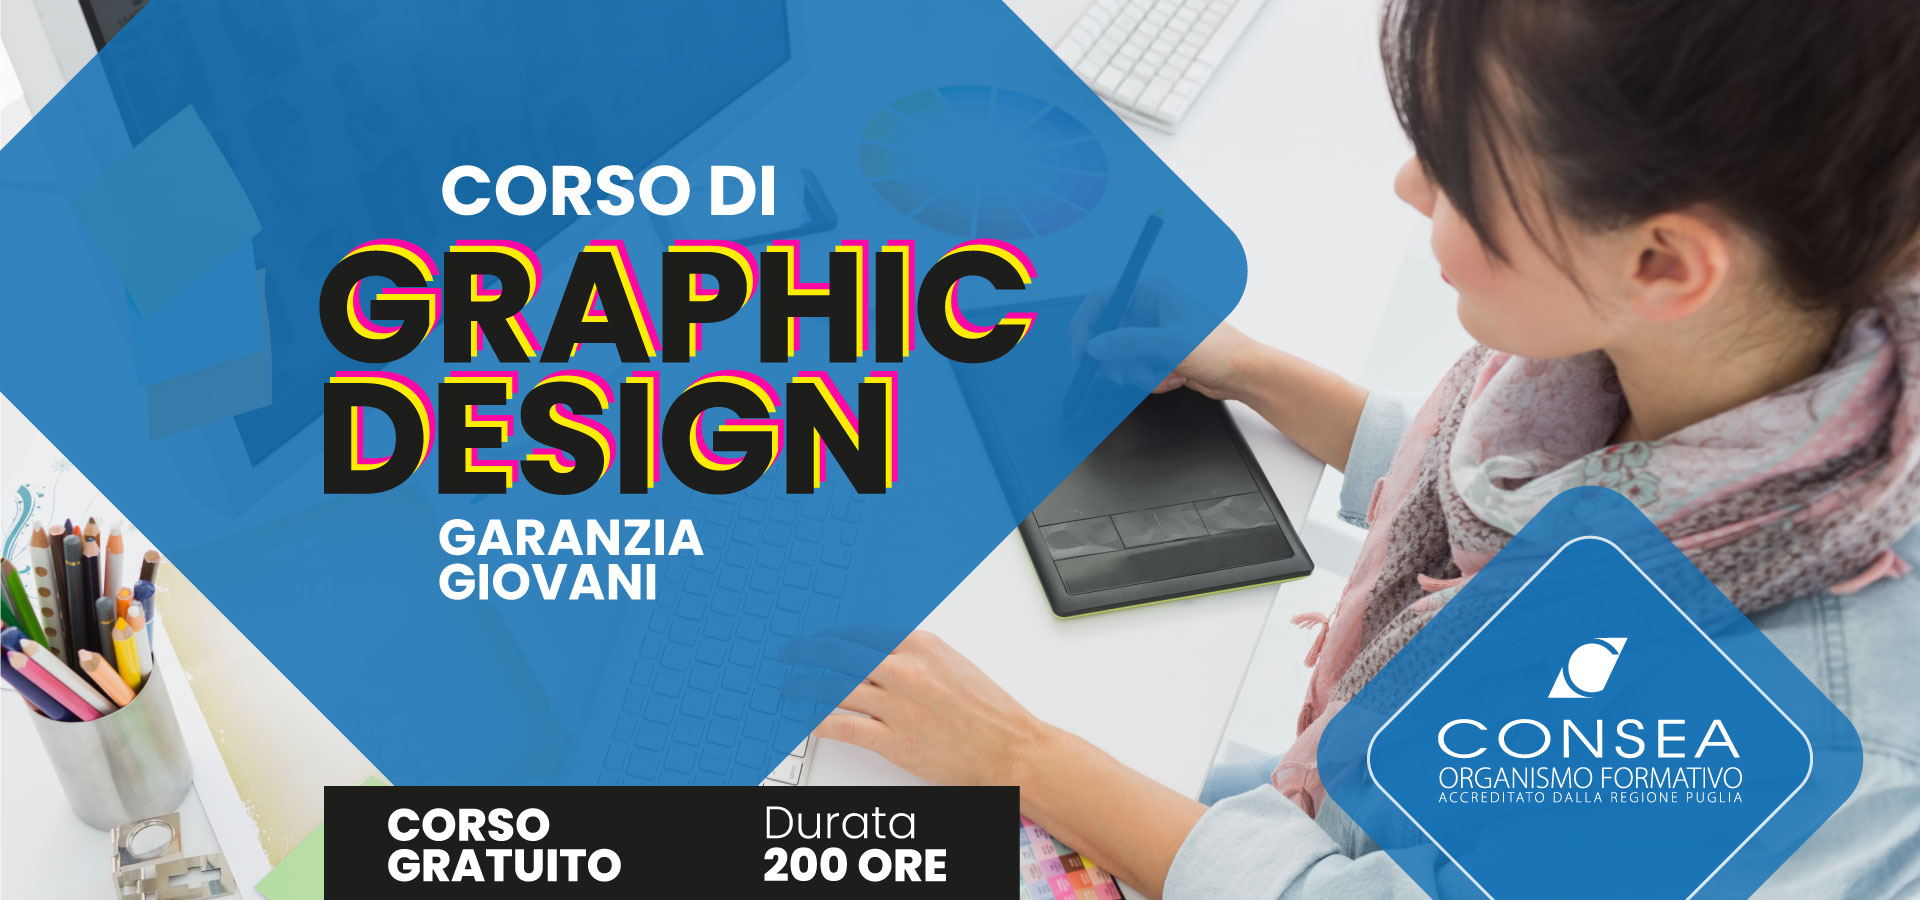 Corso gratuito di Graphic Design – Garanzia Giovani